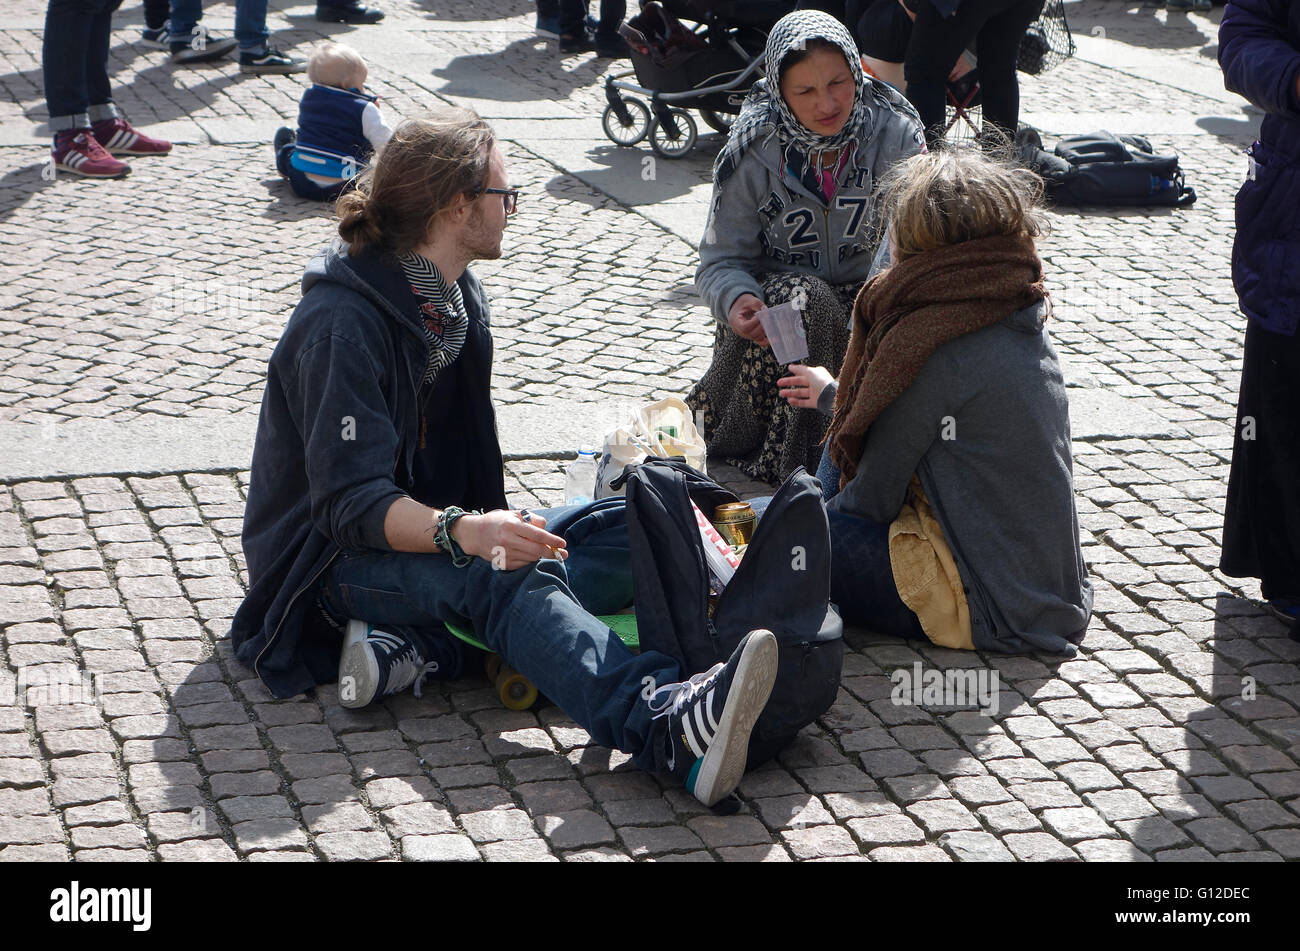 Una giovane donna coinvolta in panhandling aggressivo si avvicina ad una coppia giovane e implora per le donazioni. Gothenburg, Svezia. 2016.04.2 Foto Stock